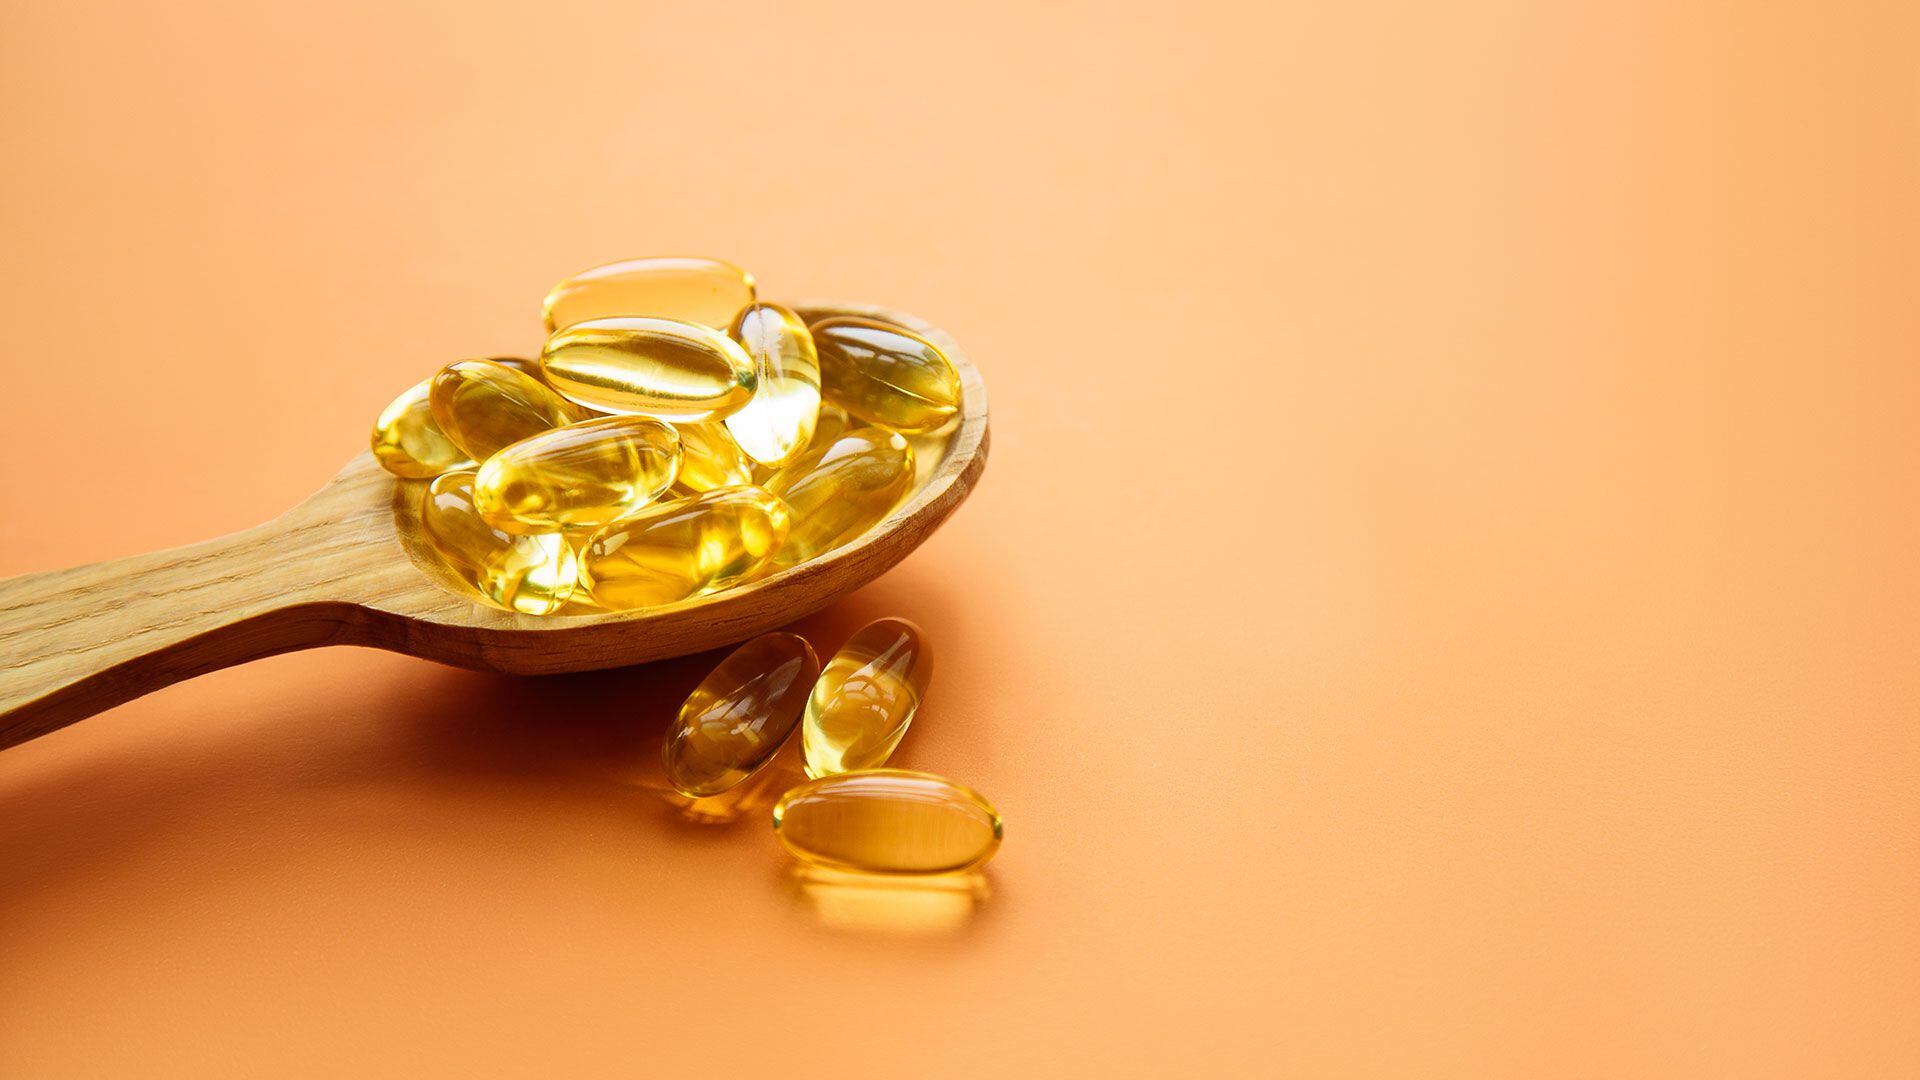 Con la edad, la capacidad de síntesis cutánea de vitamina D disminuye, resaltando la importancia de la suplementación en adultos mayores
(Getty Images)